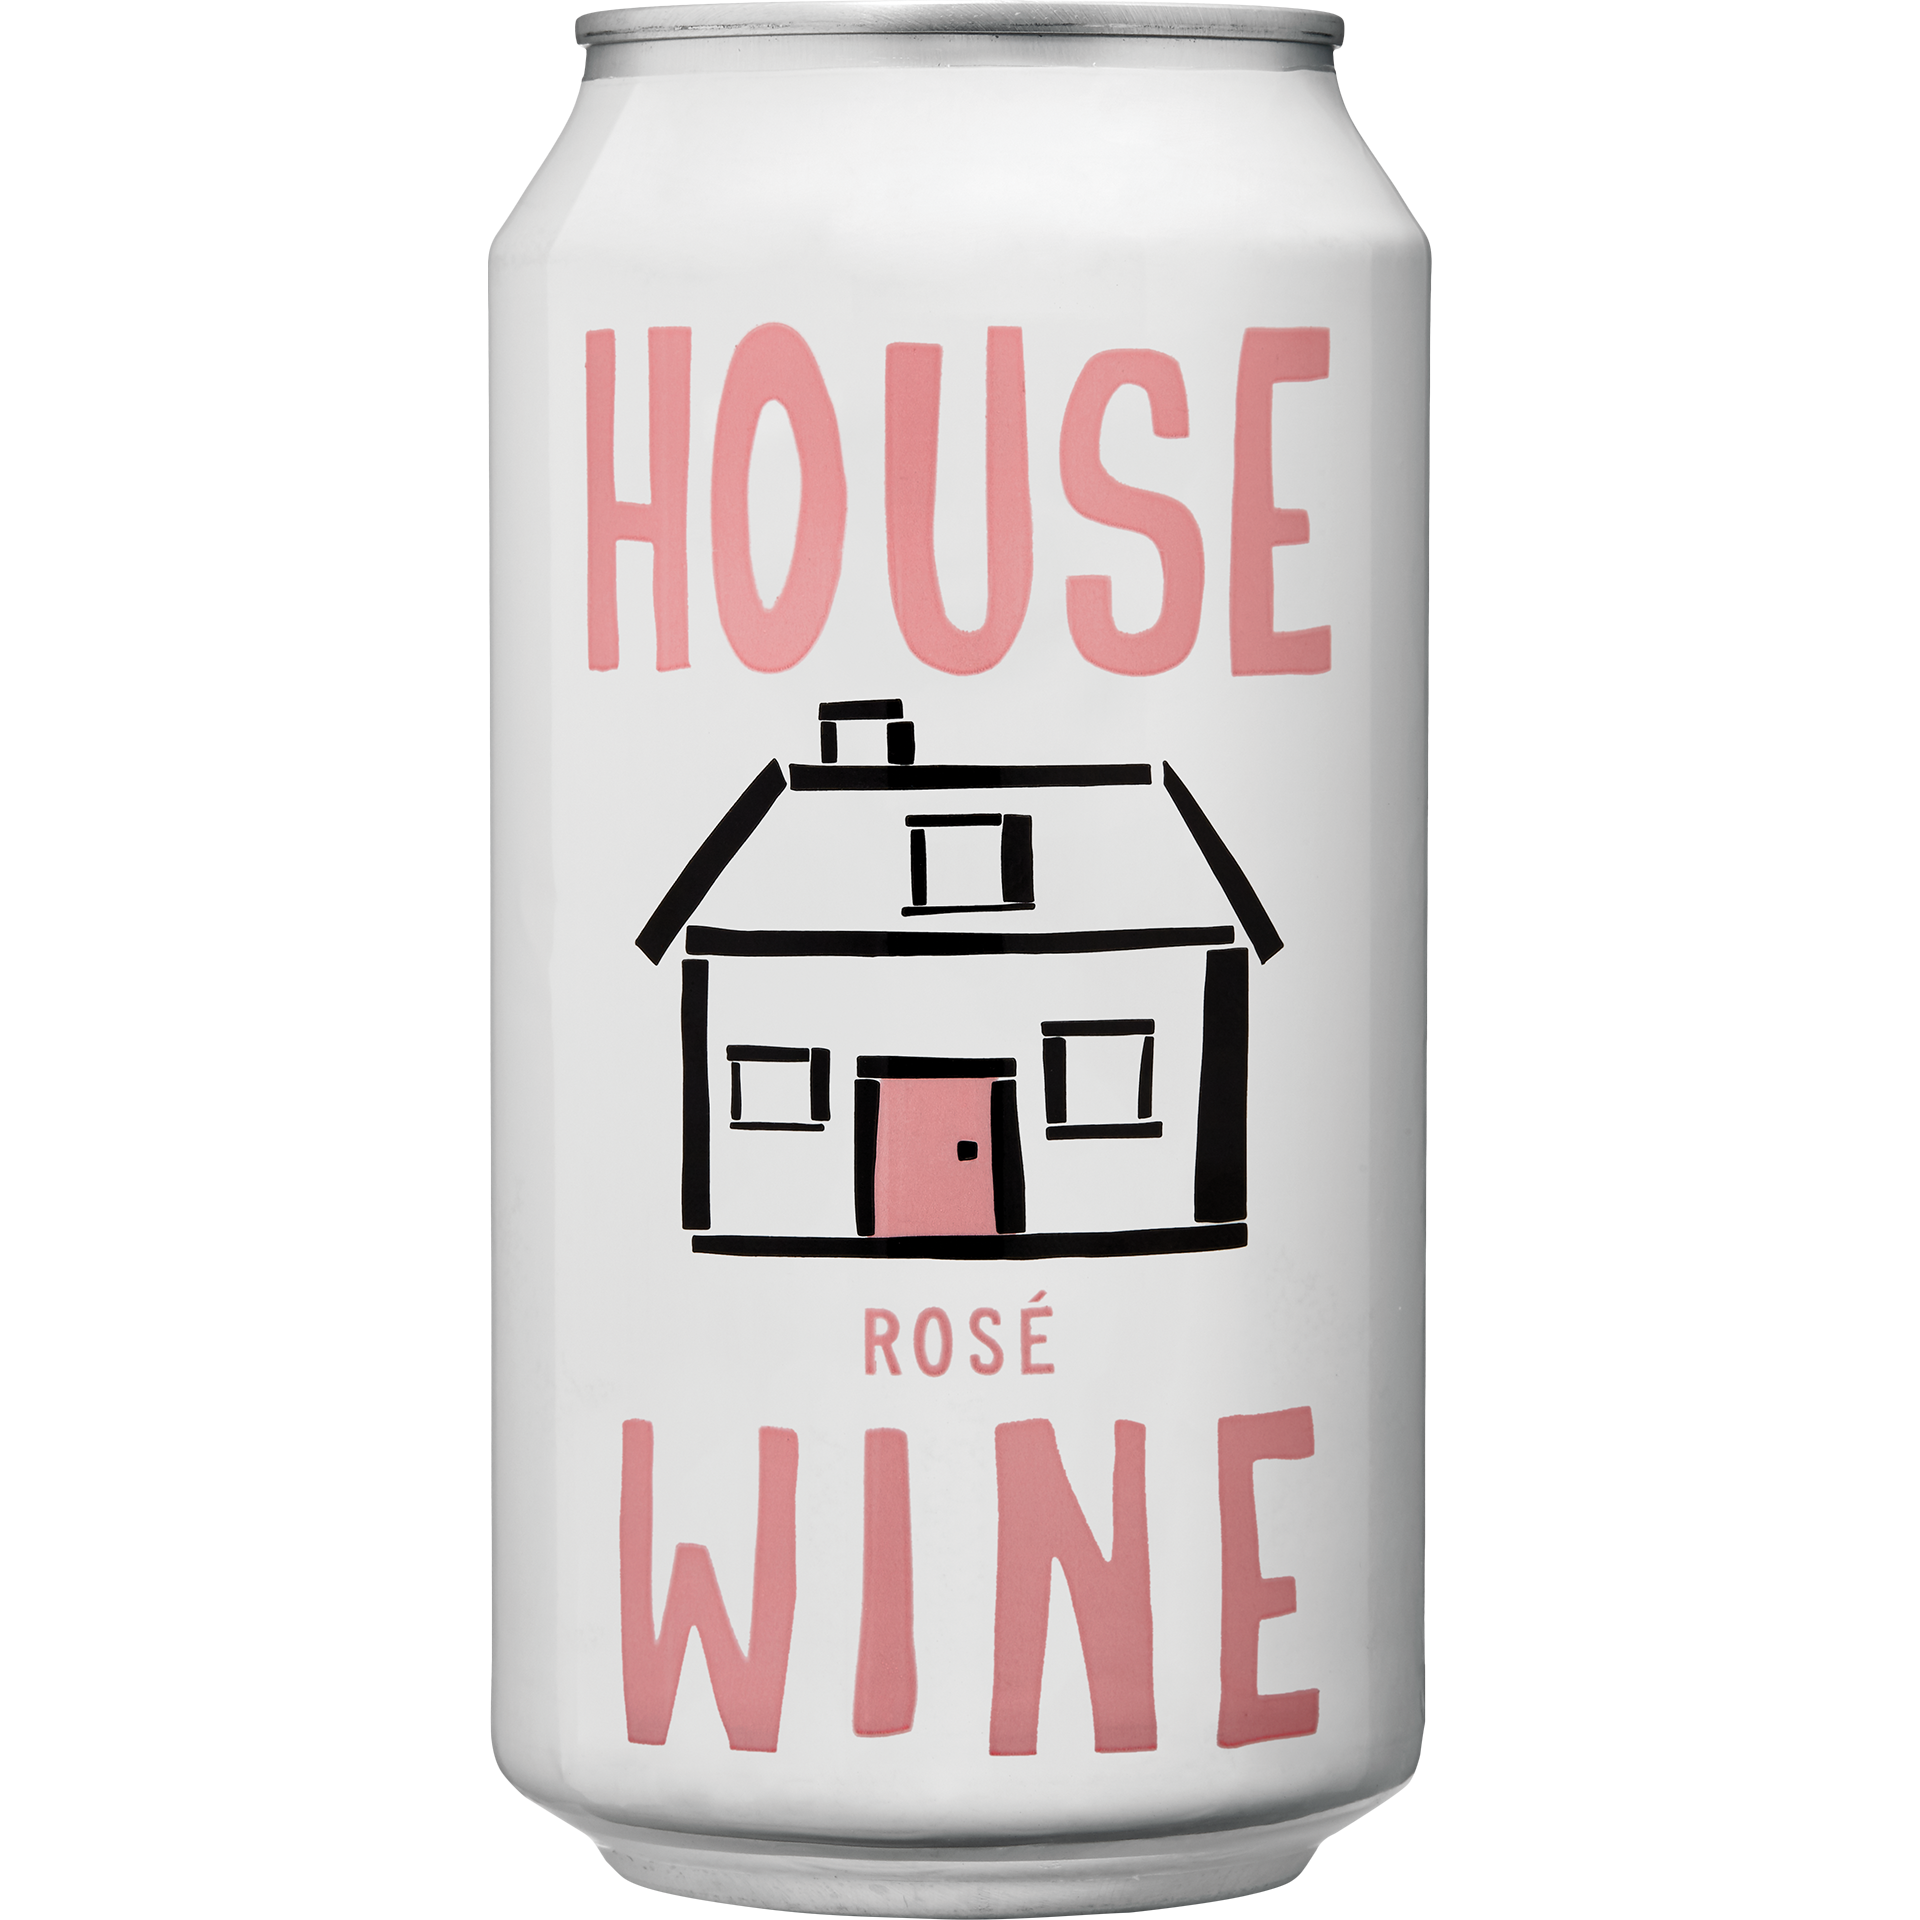 House Wine Rosé 375ml Can